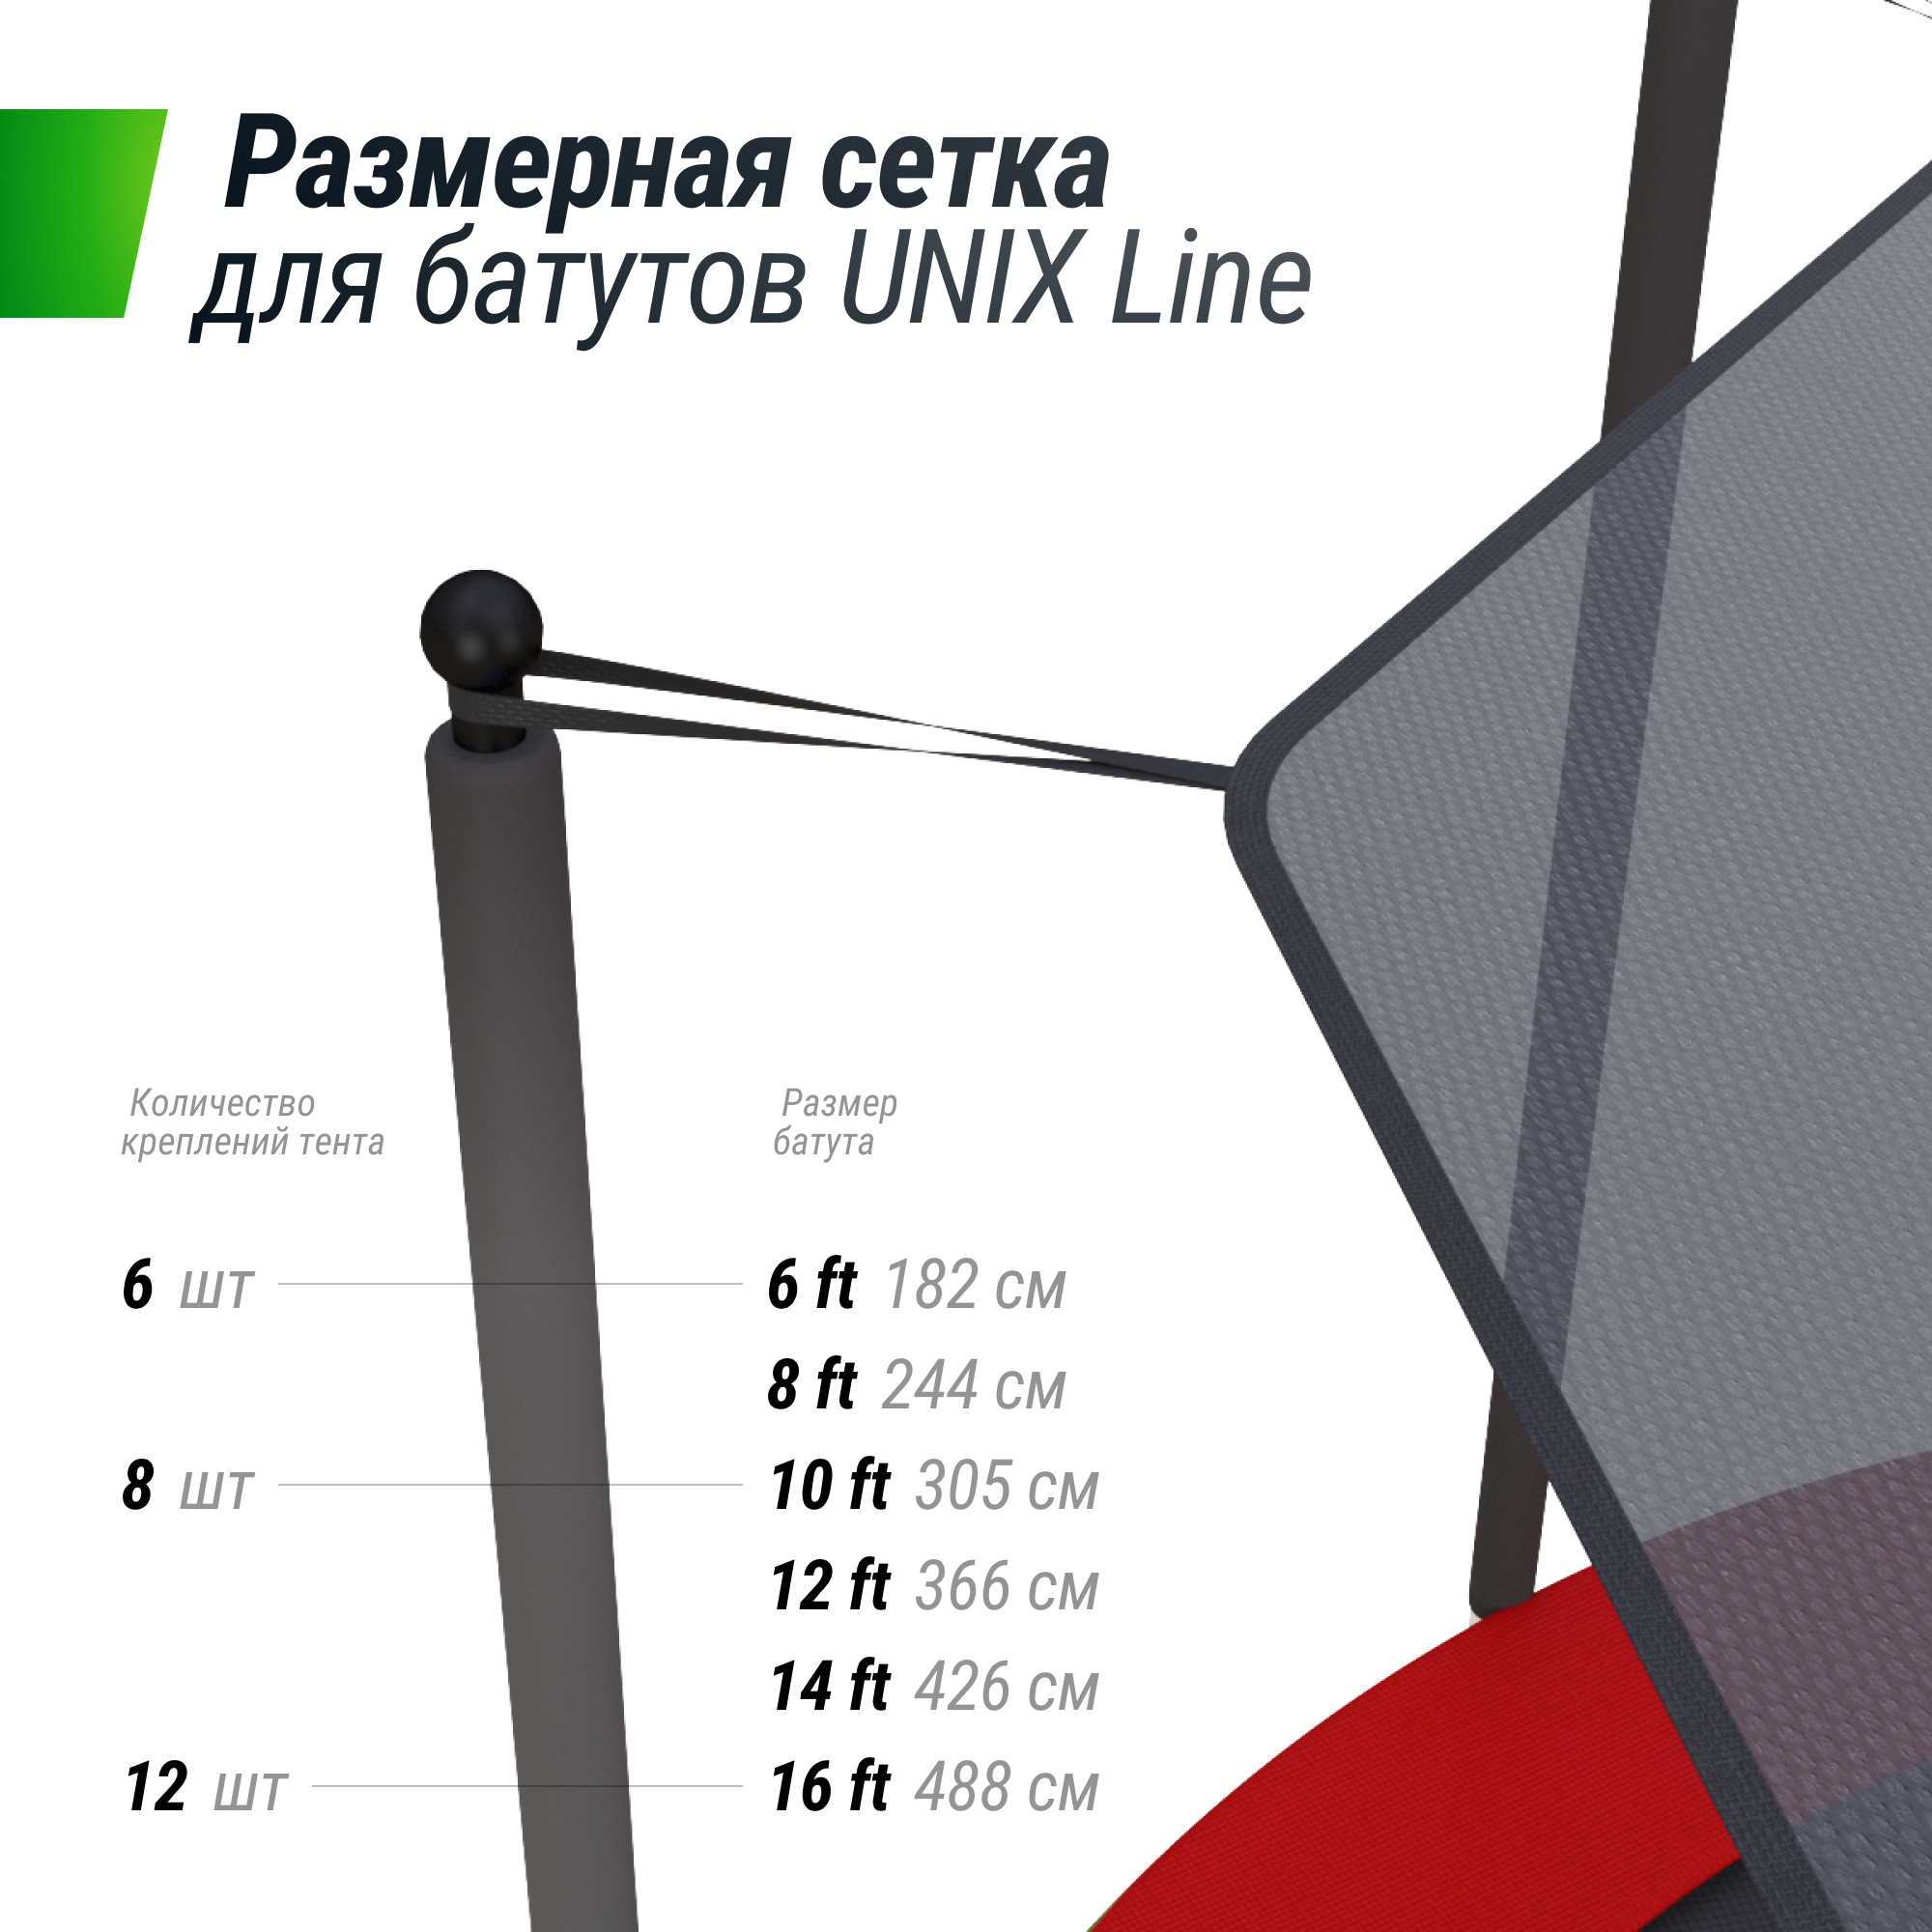 Солнцезащитный тент UNIX Line 426 см (14 ft)